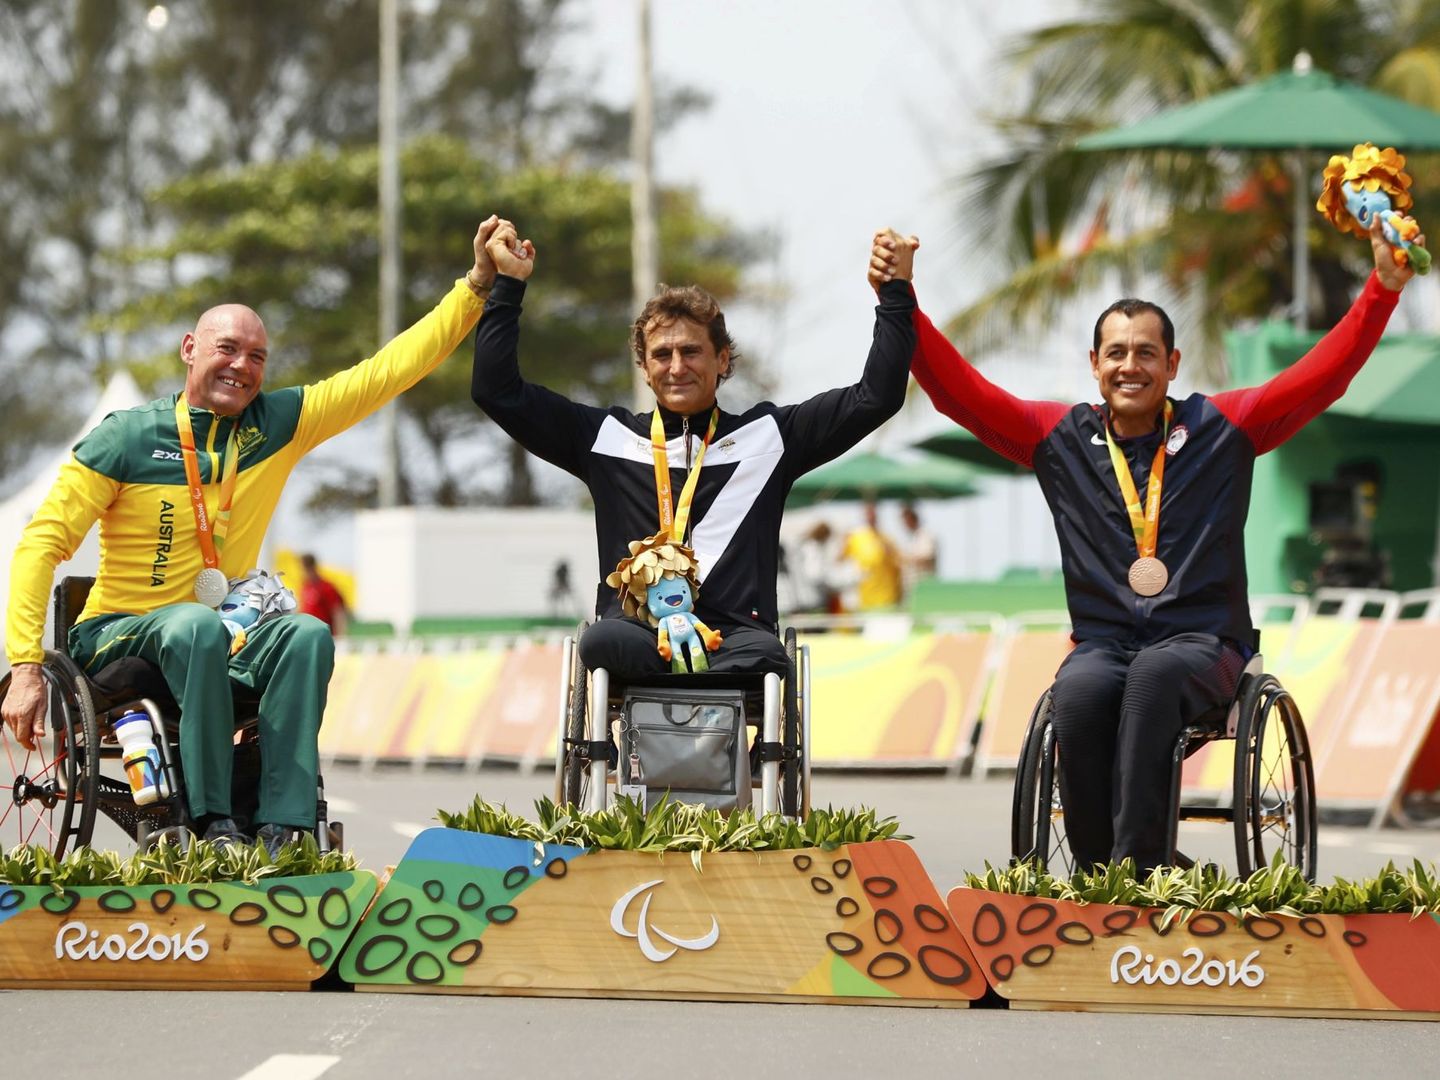 Tras su accidente, Zanardi logró varias medallas paraolímpicas en bicicleta (EFE)